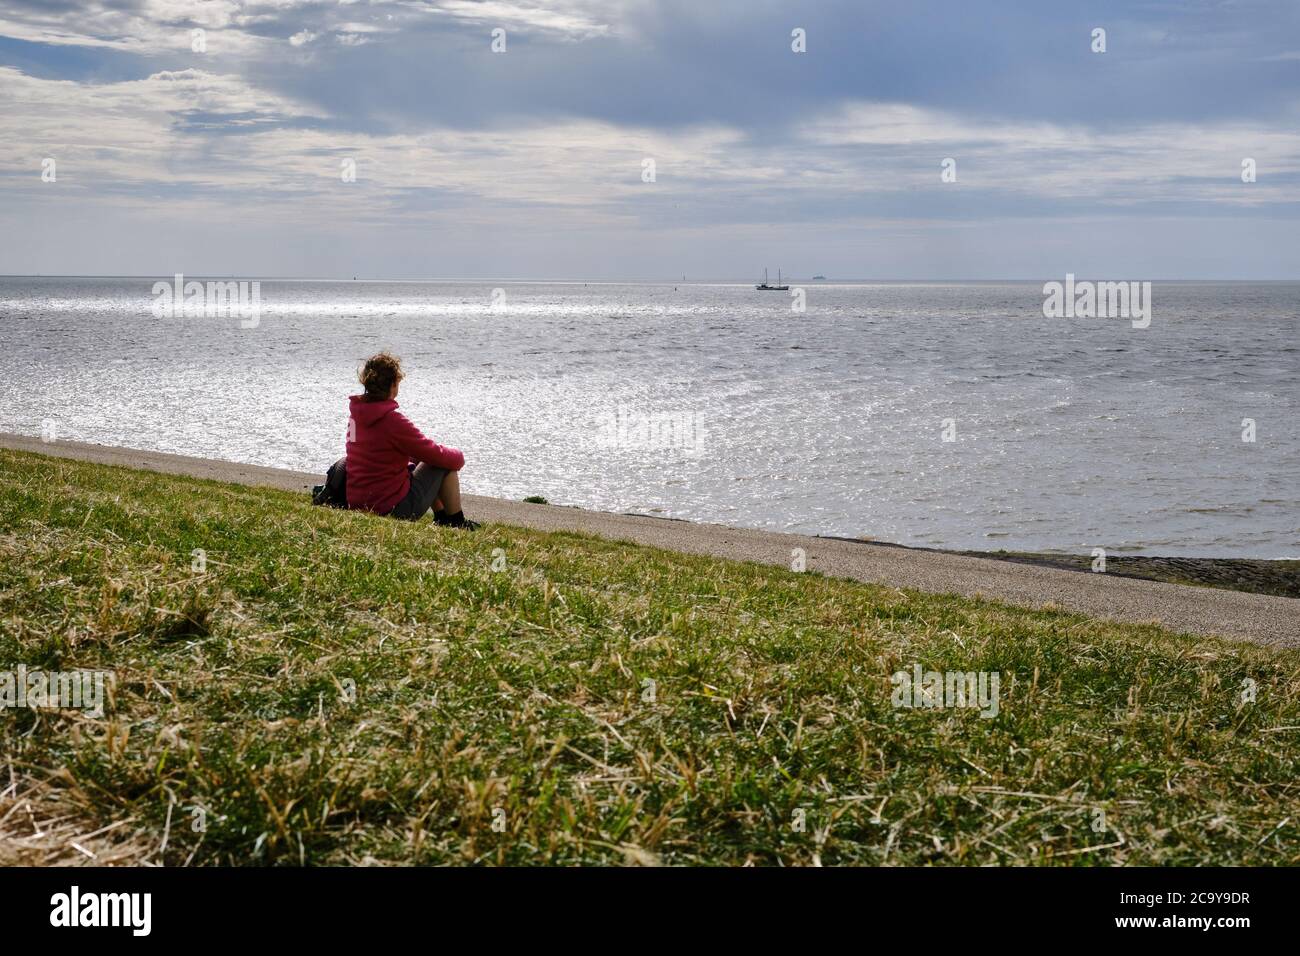 Harlingen,Niederlande,Juli,23,2020:Silhouette Rückseite der jungen Frau auf einem Deich mit Blick auf das Wattenmeer. Denken an Probleme während der Corona-Krise Stockfoto